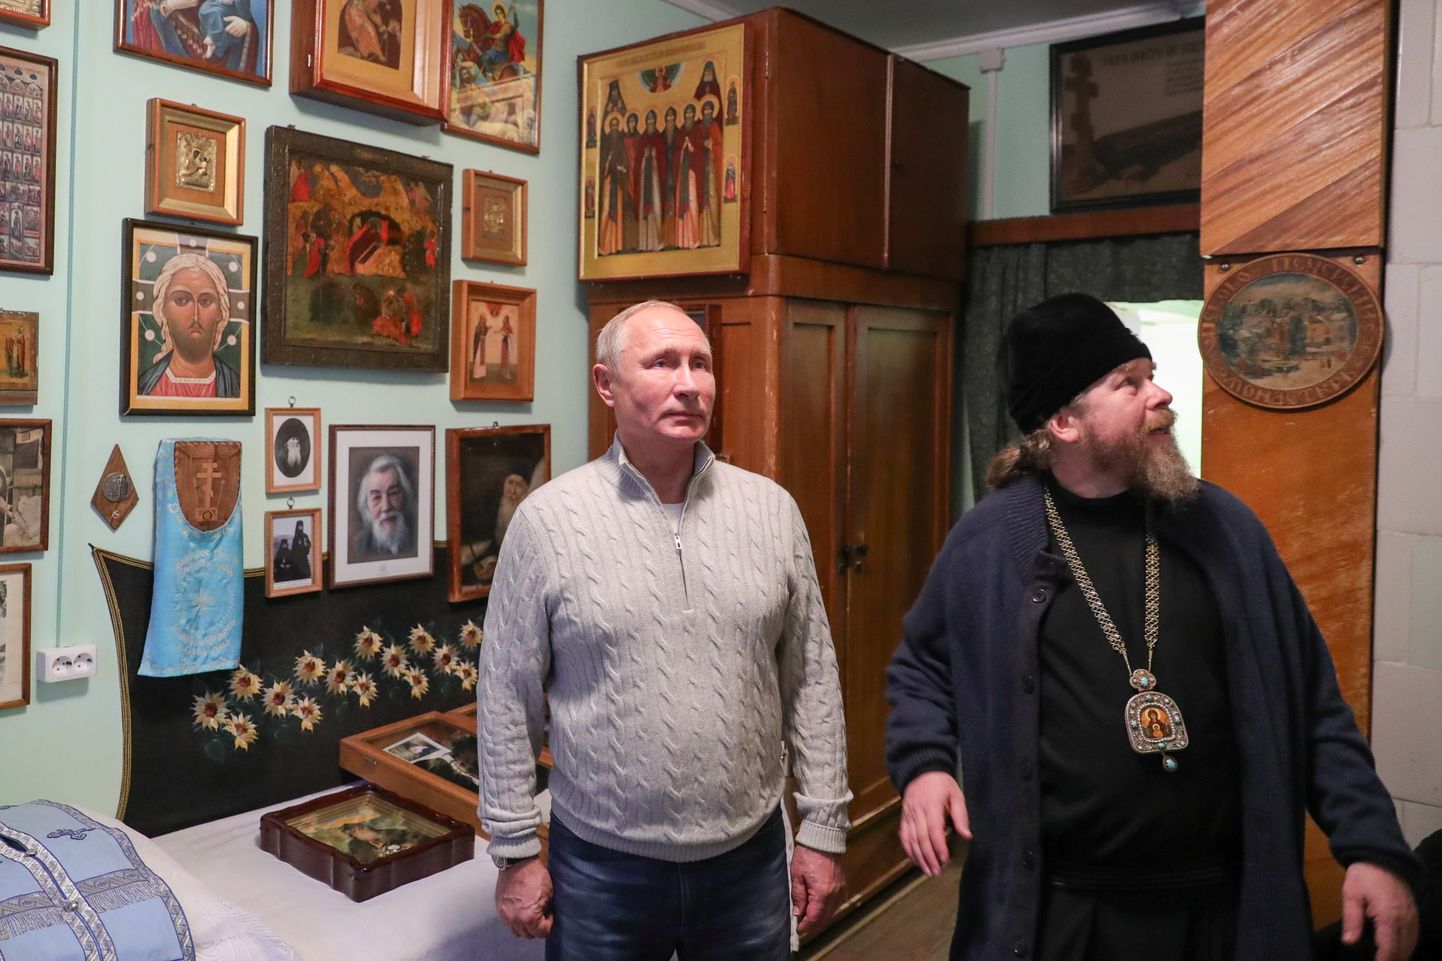 Metropoliit Tihhon tutvustab 2018. aastal president Vladimir Putinile Pihkva kloostrielu.